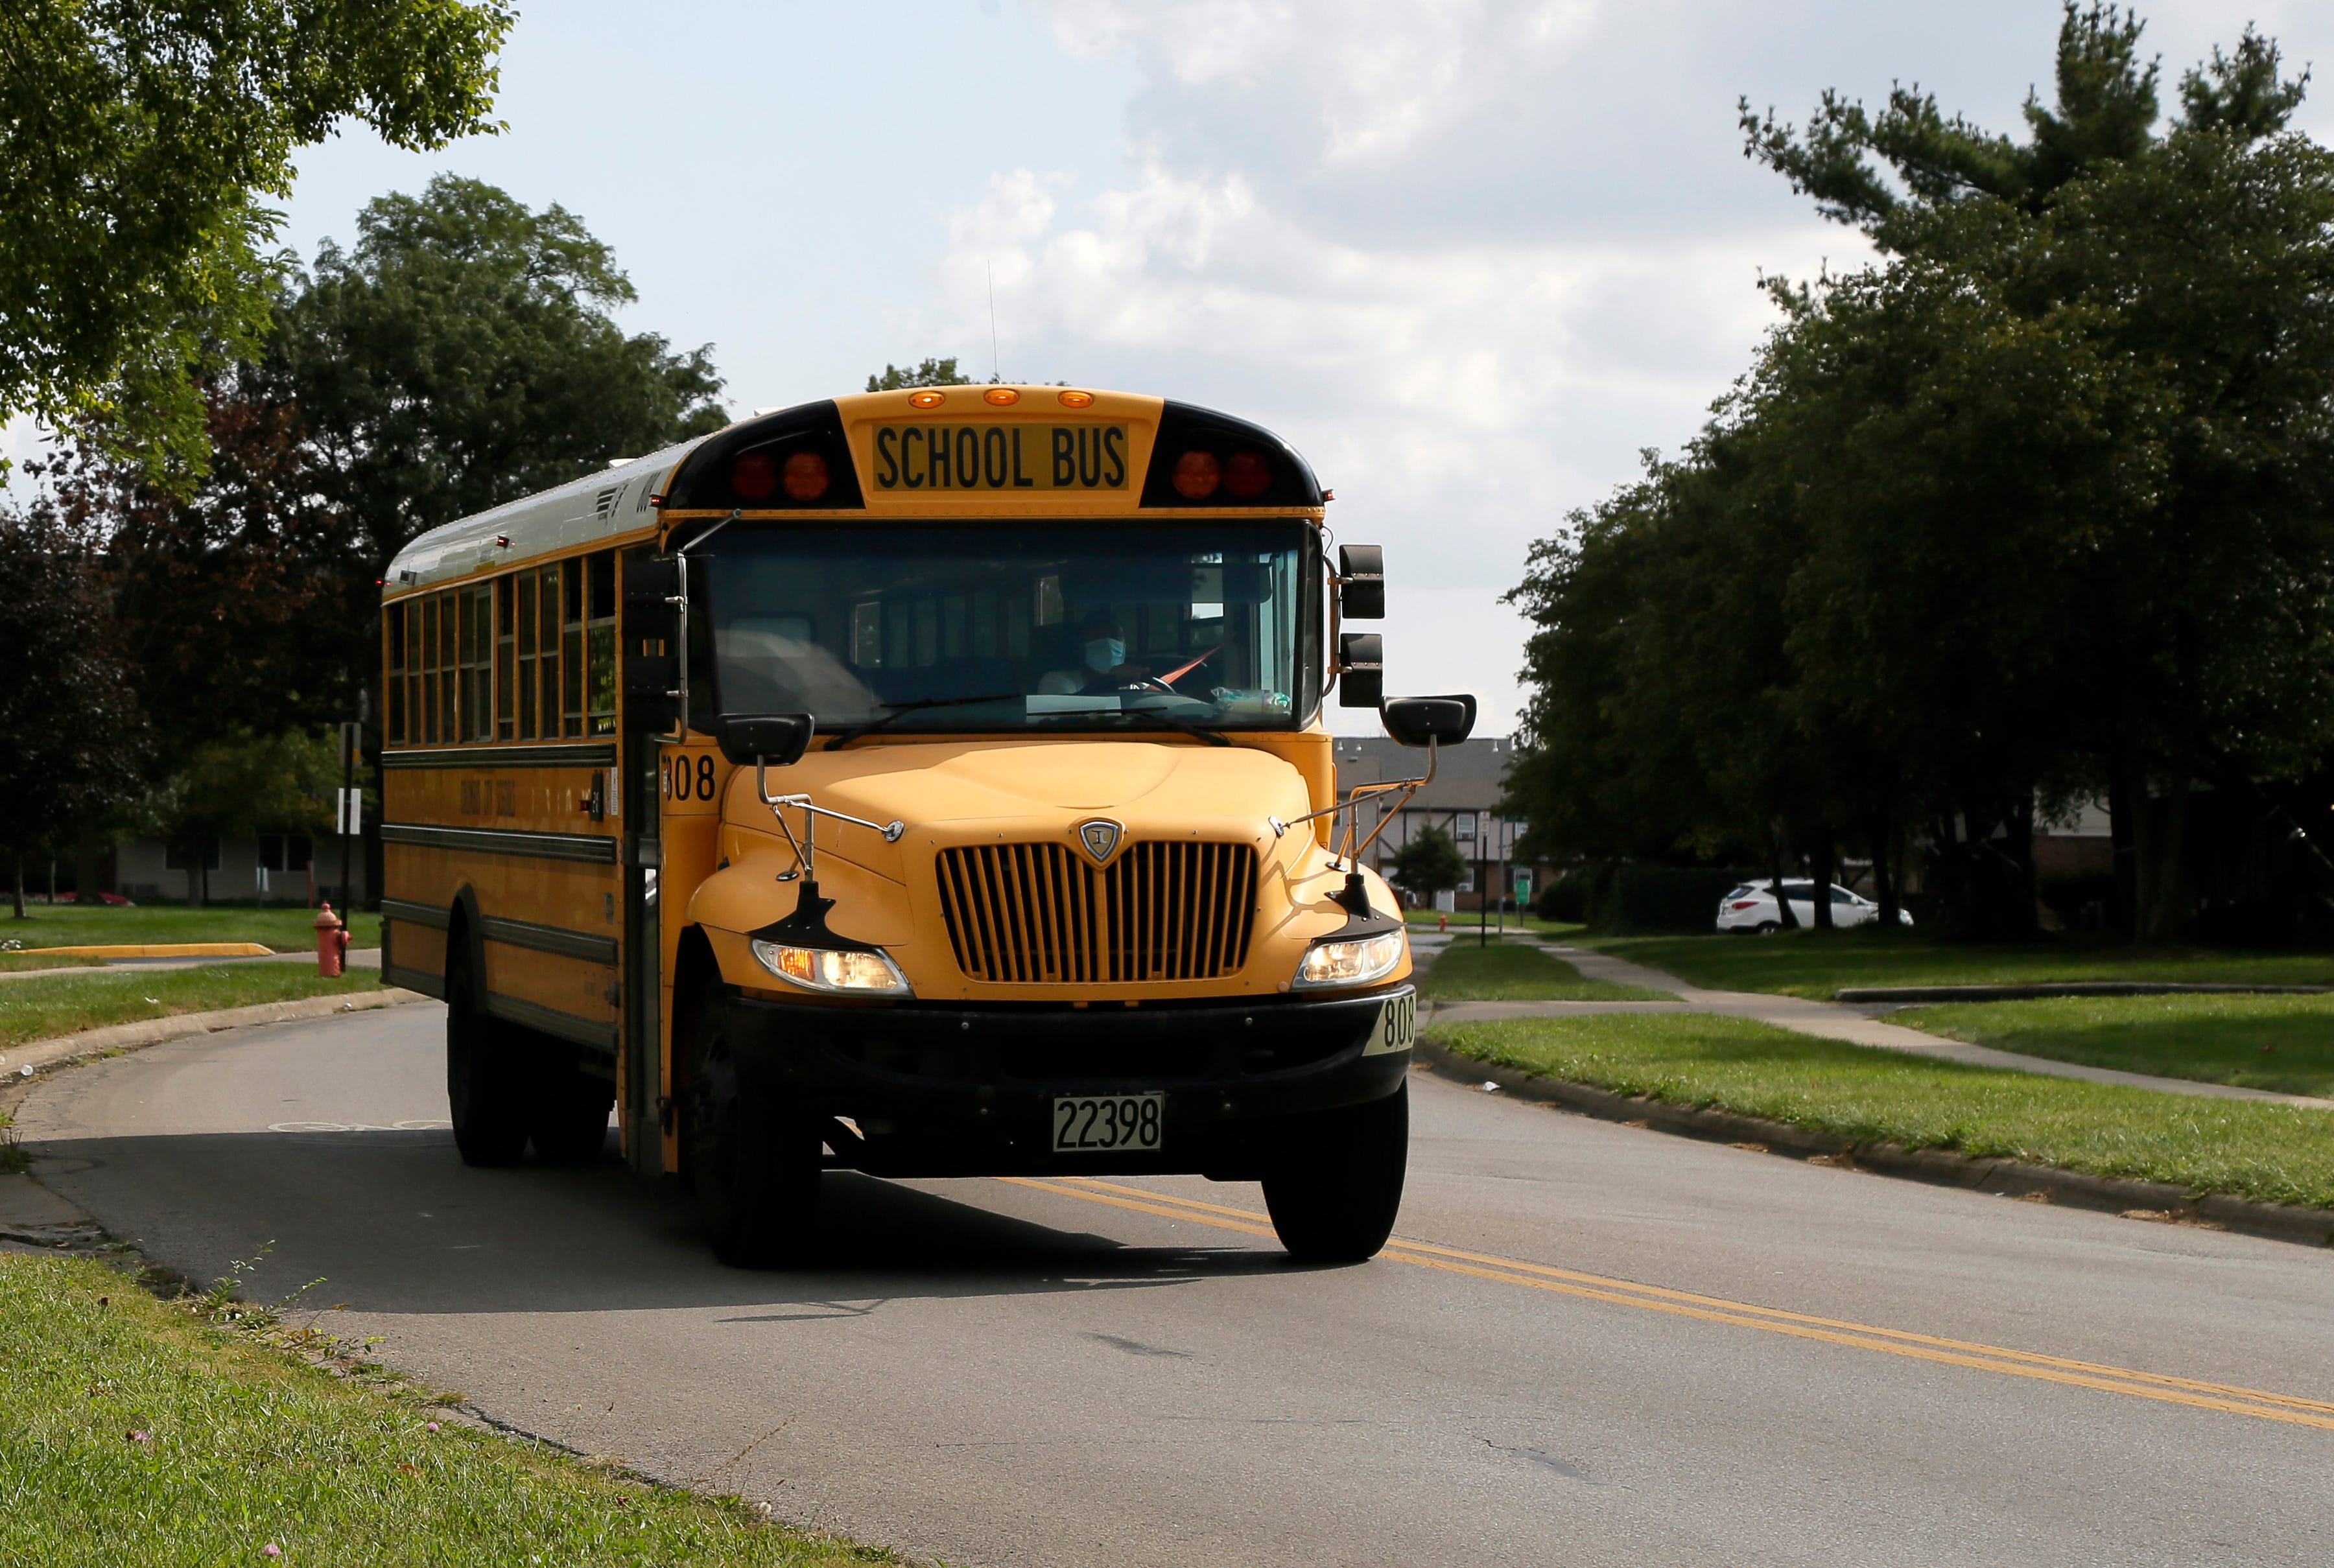 school bus shortage 2019